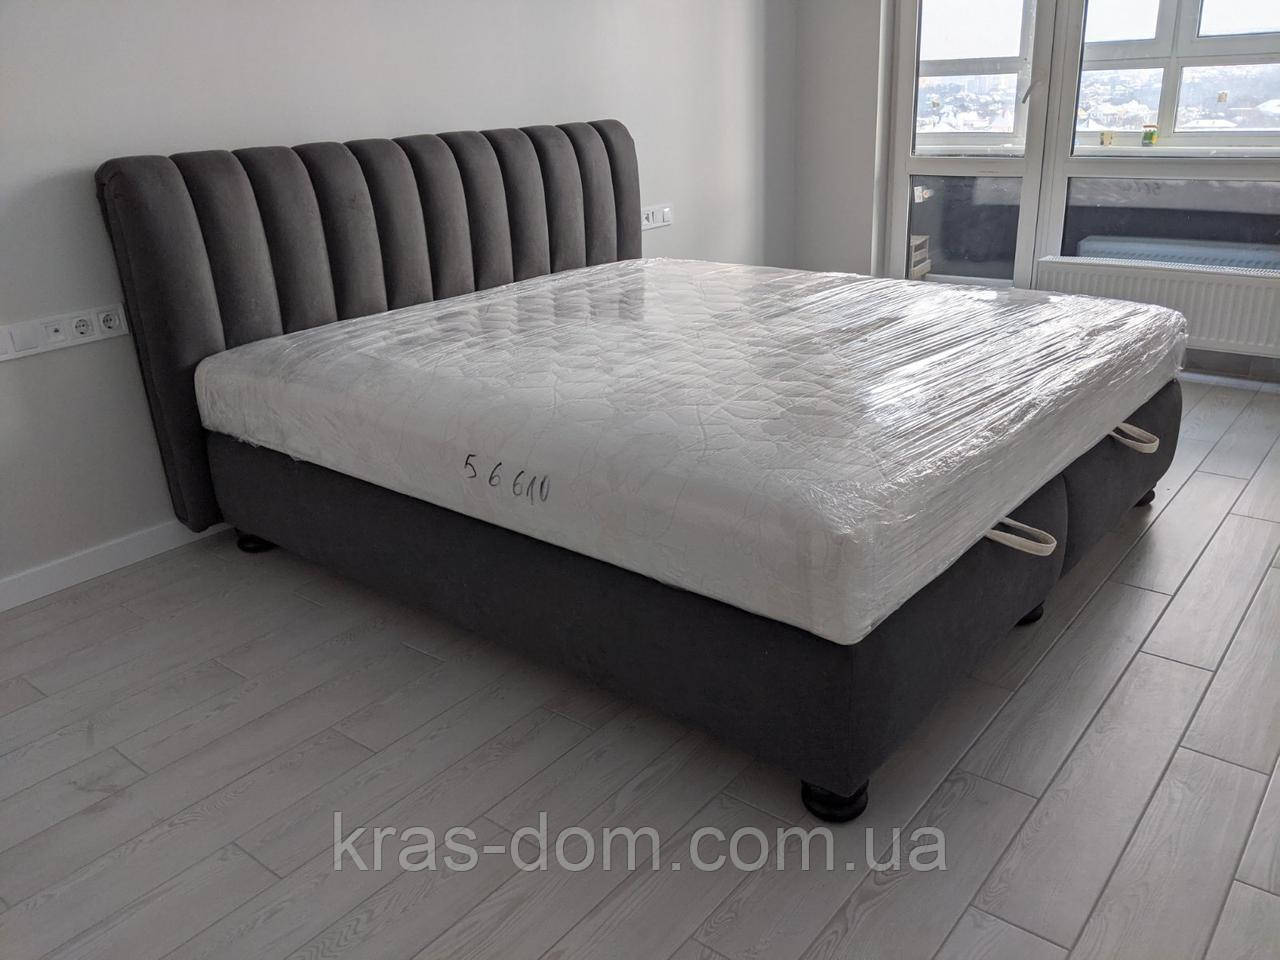 Ліжко двоспальне "Орхідея 2» з каркасним матрацом, ВНД